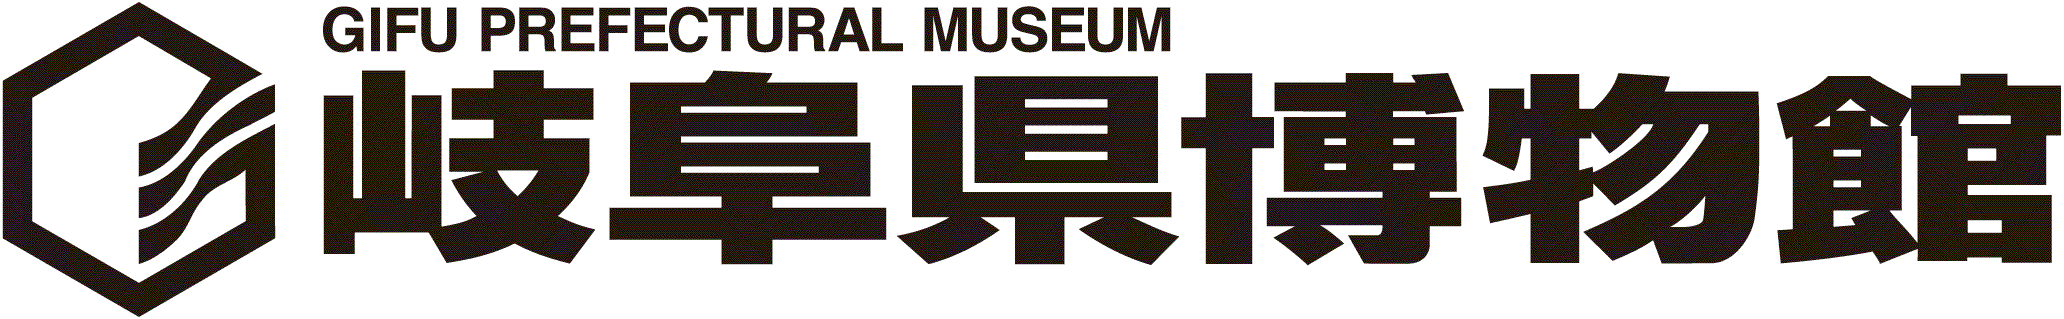 岐阜県博物館へのリンク